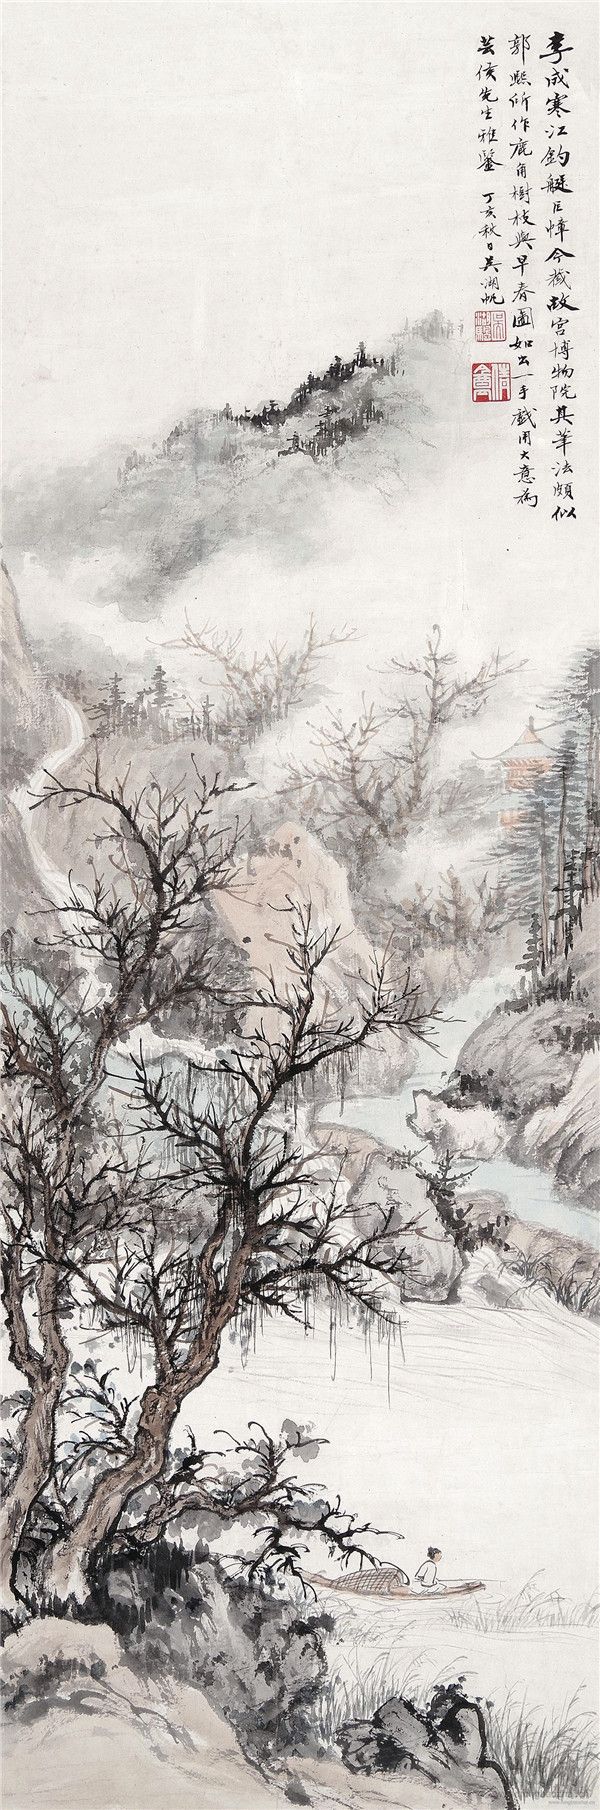 吴湖帆 1894-1968 寒江钓艇图 设色纸本 立轴 98×32.5cm 约2.9平尺